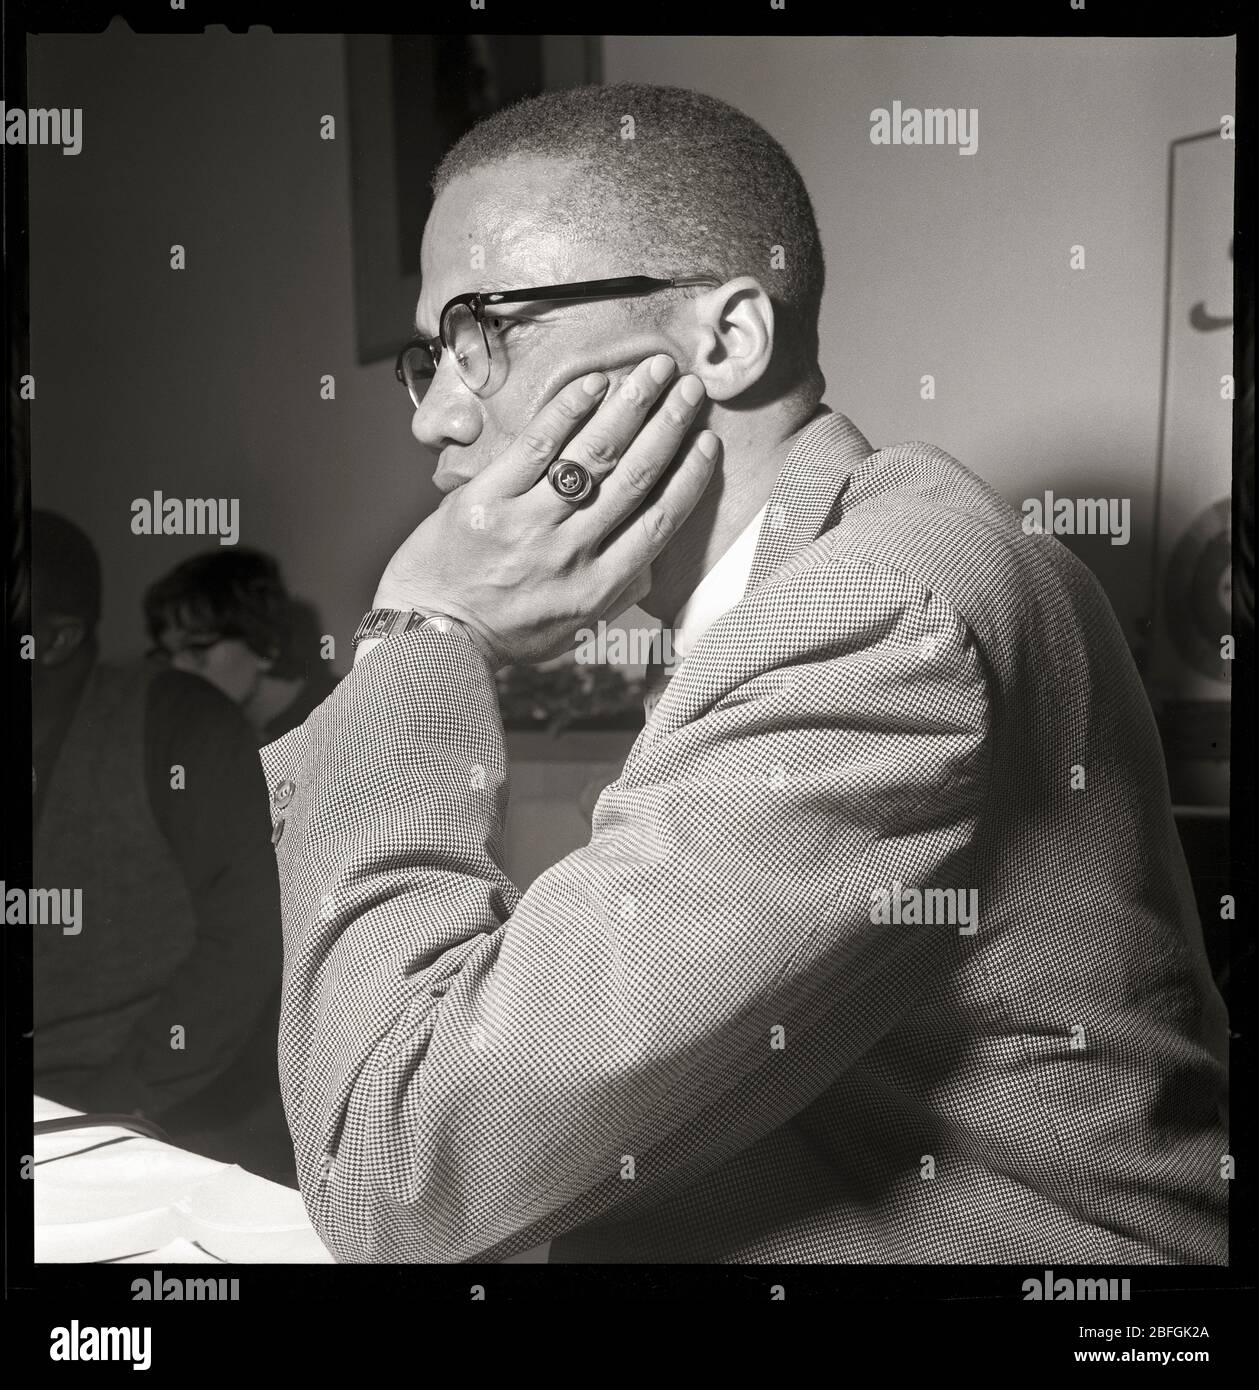 Malcolm X in Chicago, Illinois. Mai 1961. Nation des Islam und Black Muslim Führer. Bild von 2.25 x 2.25 Zoll negativ. Stockfoto